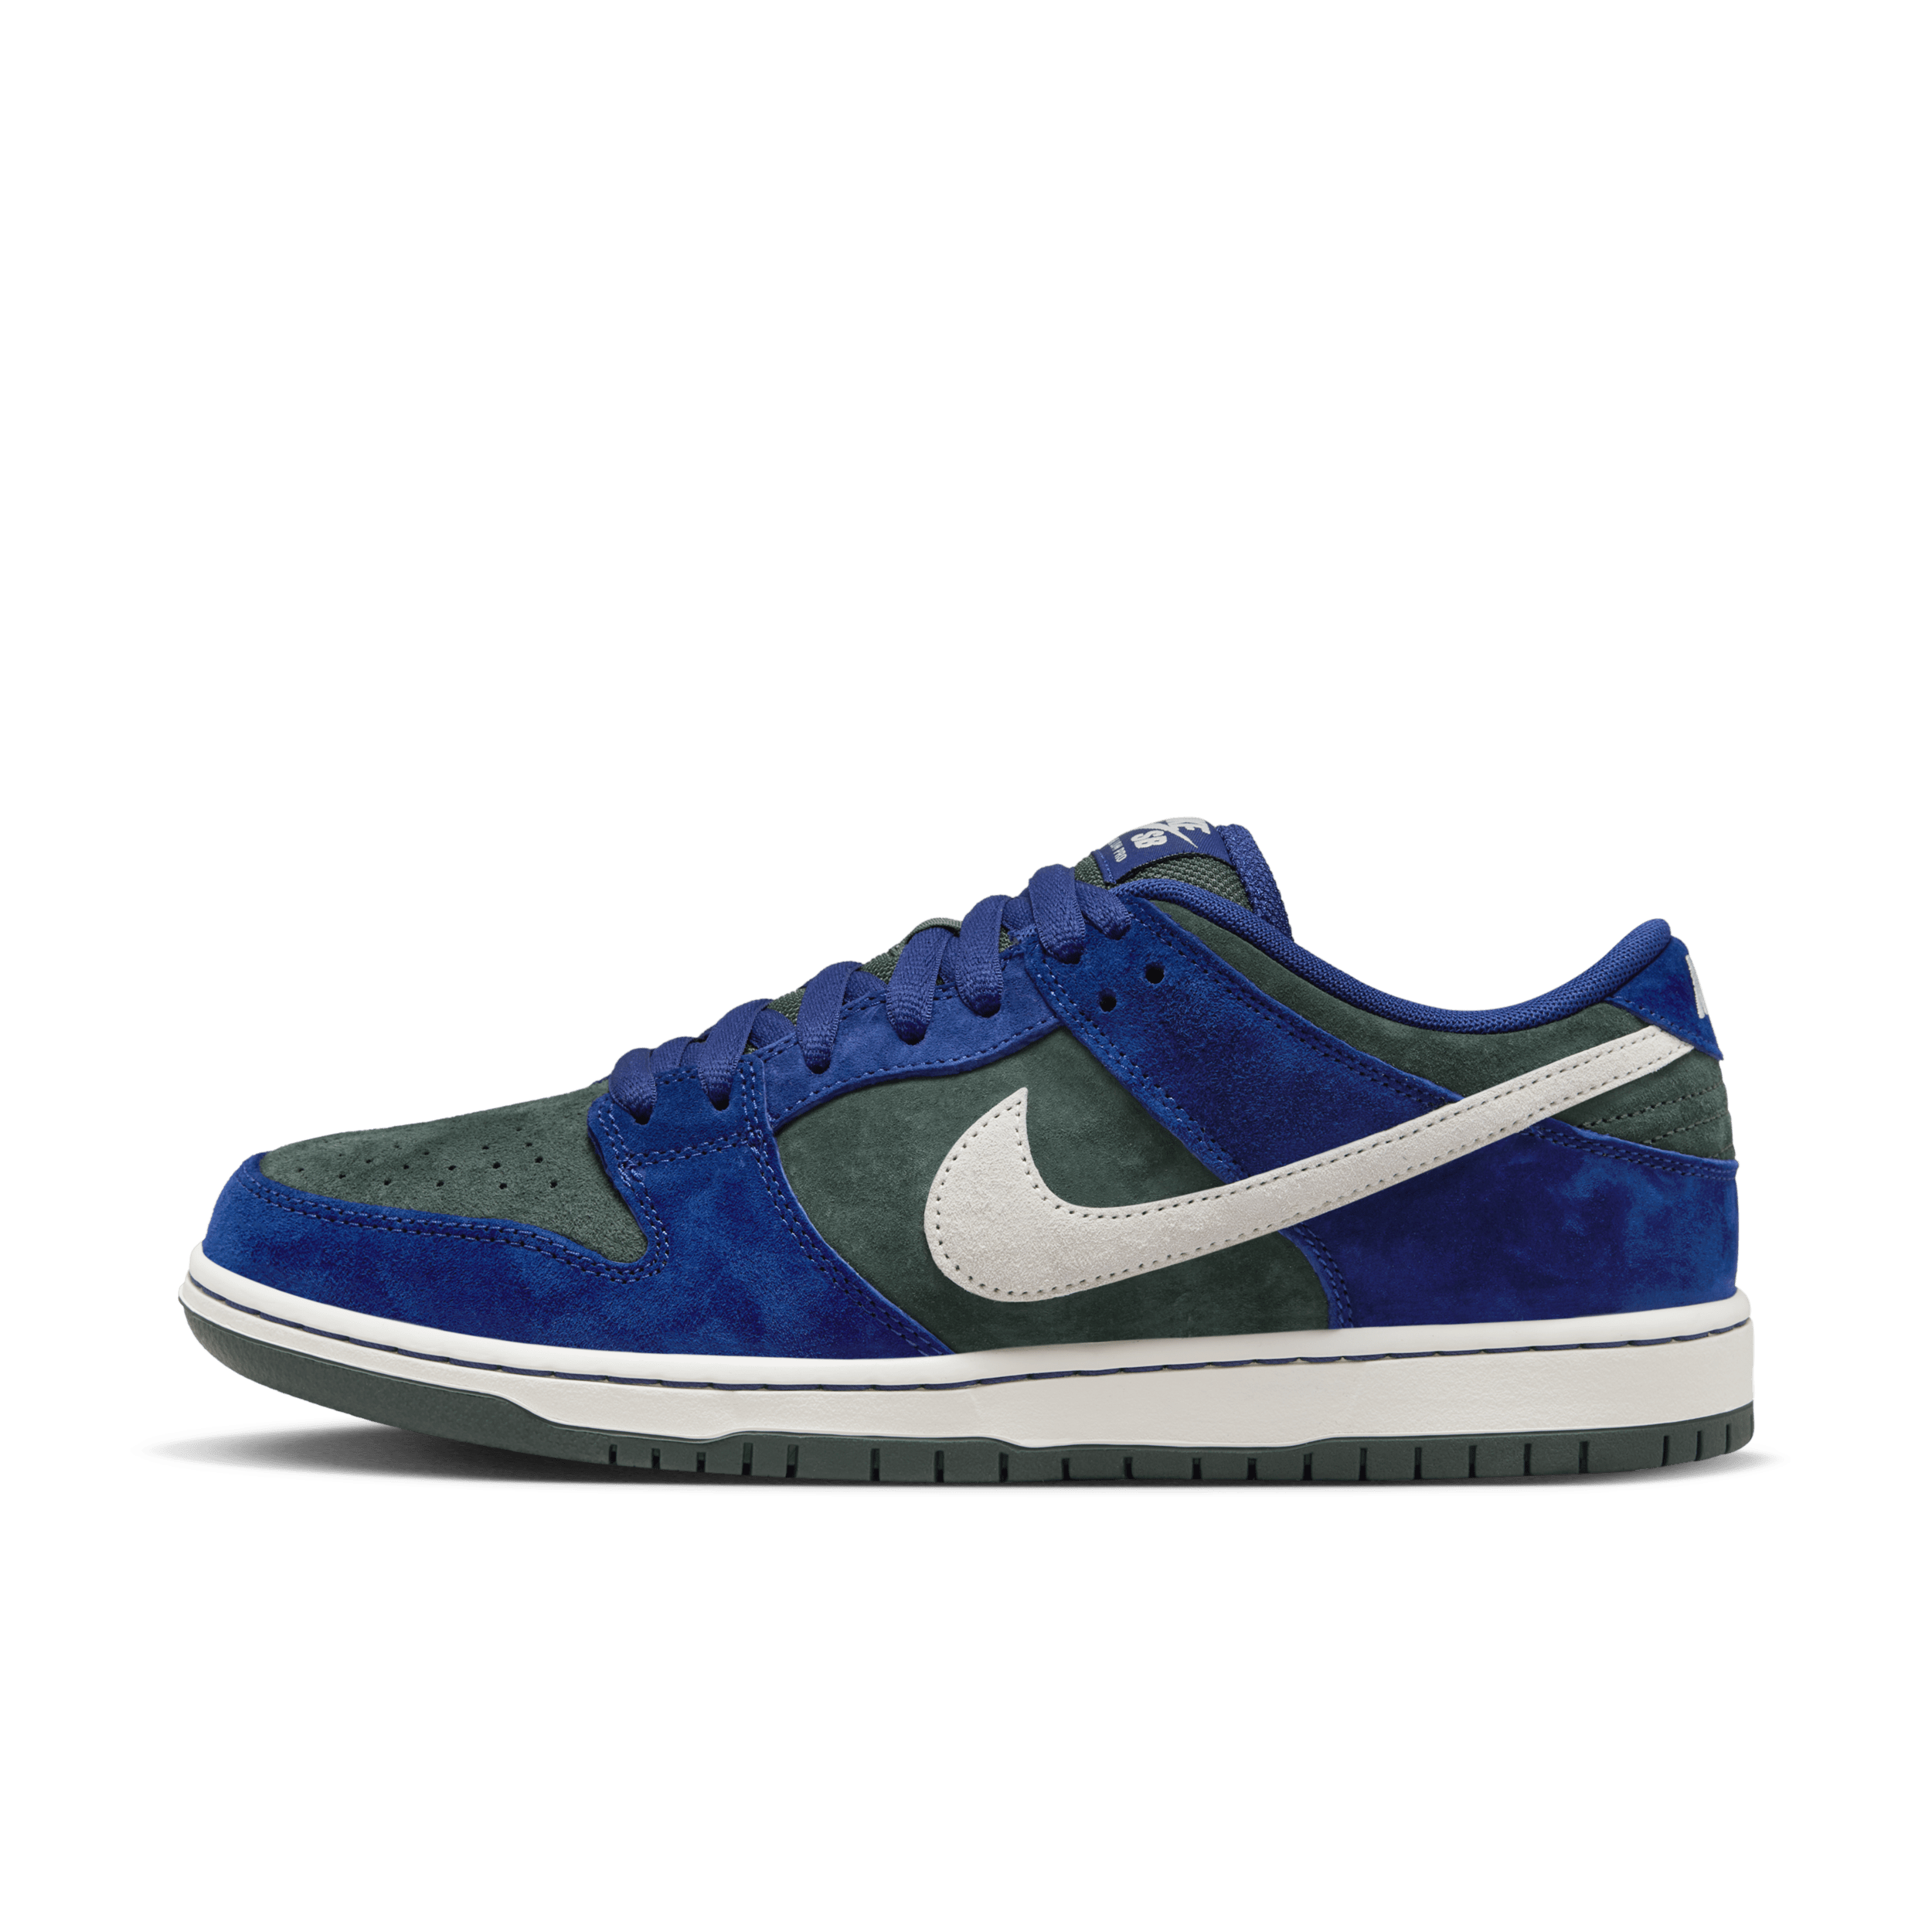 Nike SB Dunk Low Pro Zapatillas de skateboard - Azul